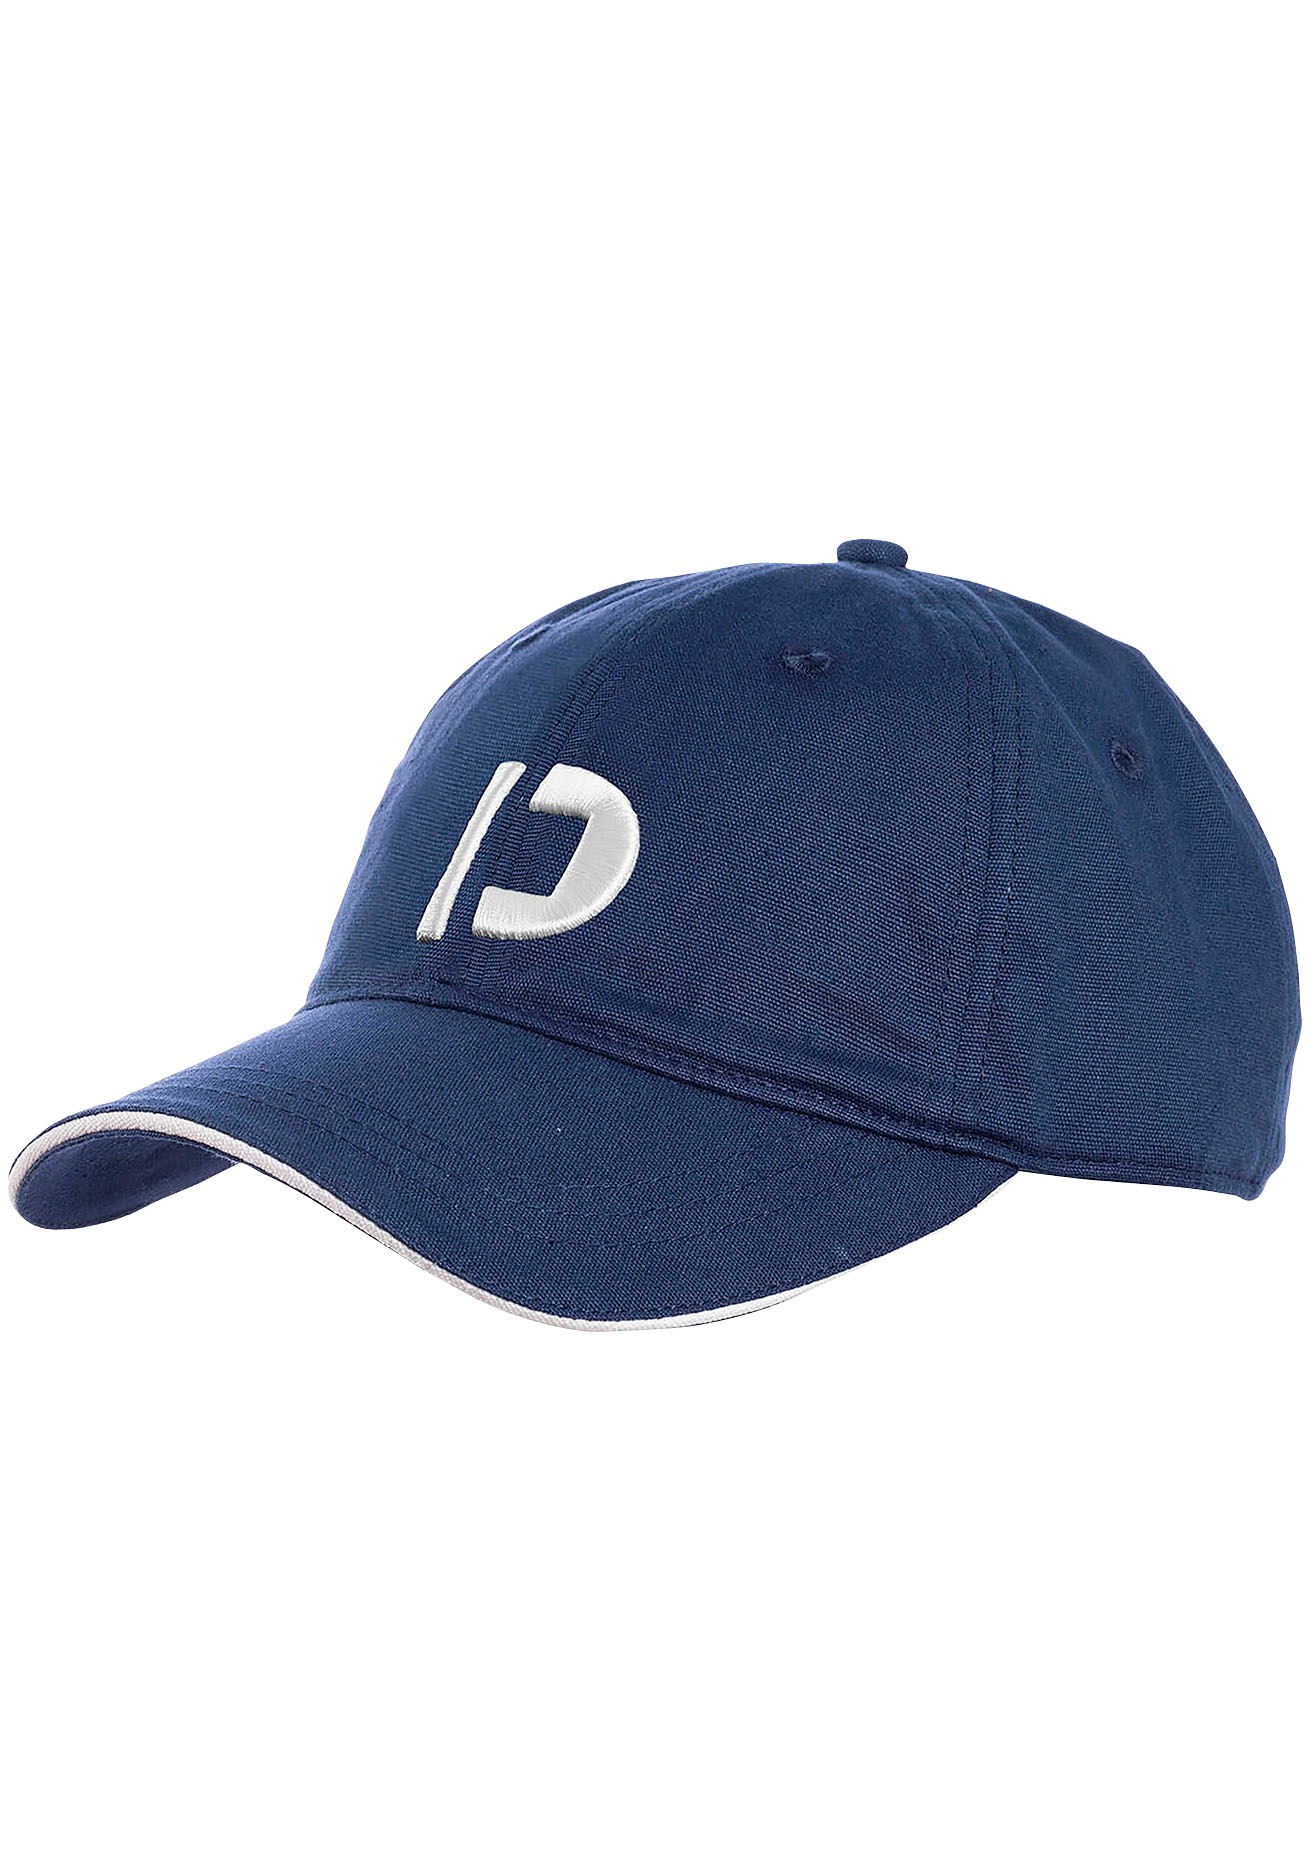 Baseball Caps Herren kaufen online